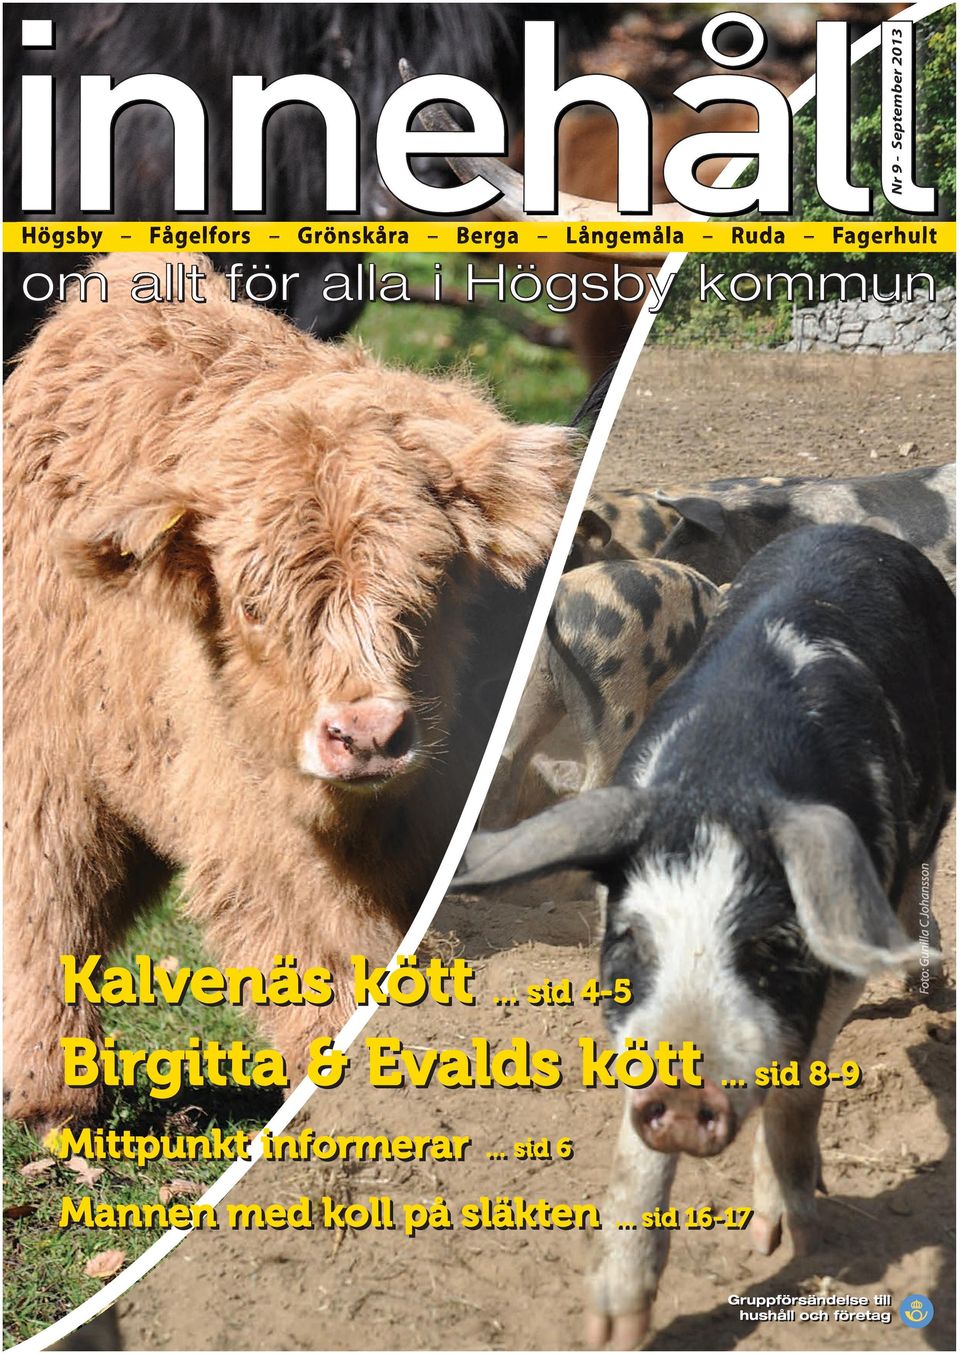 Kalvenäs kött... sid sid 4-5 4-5 Birgitta & Evalds kött.